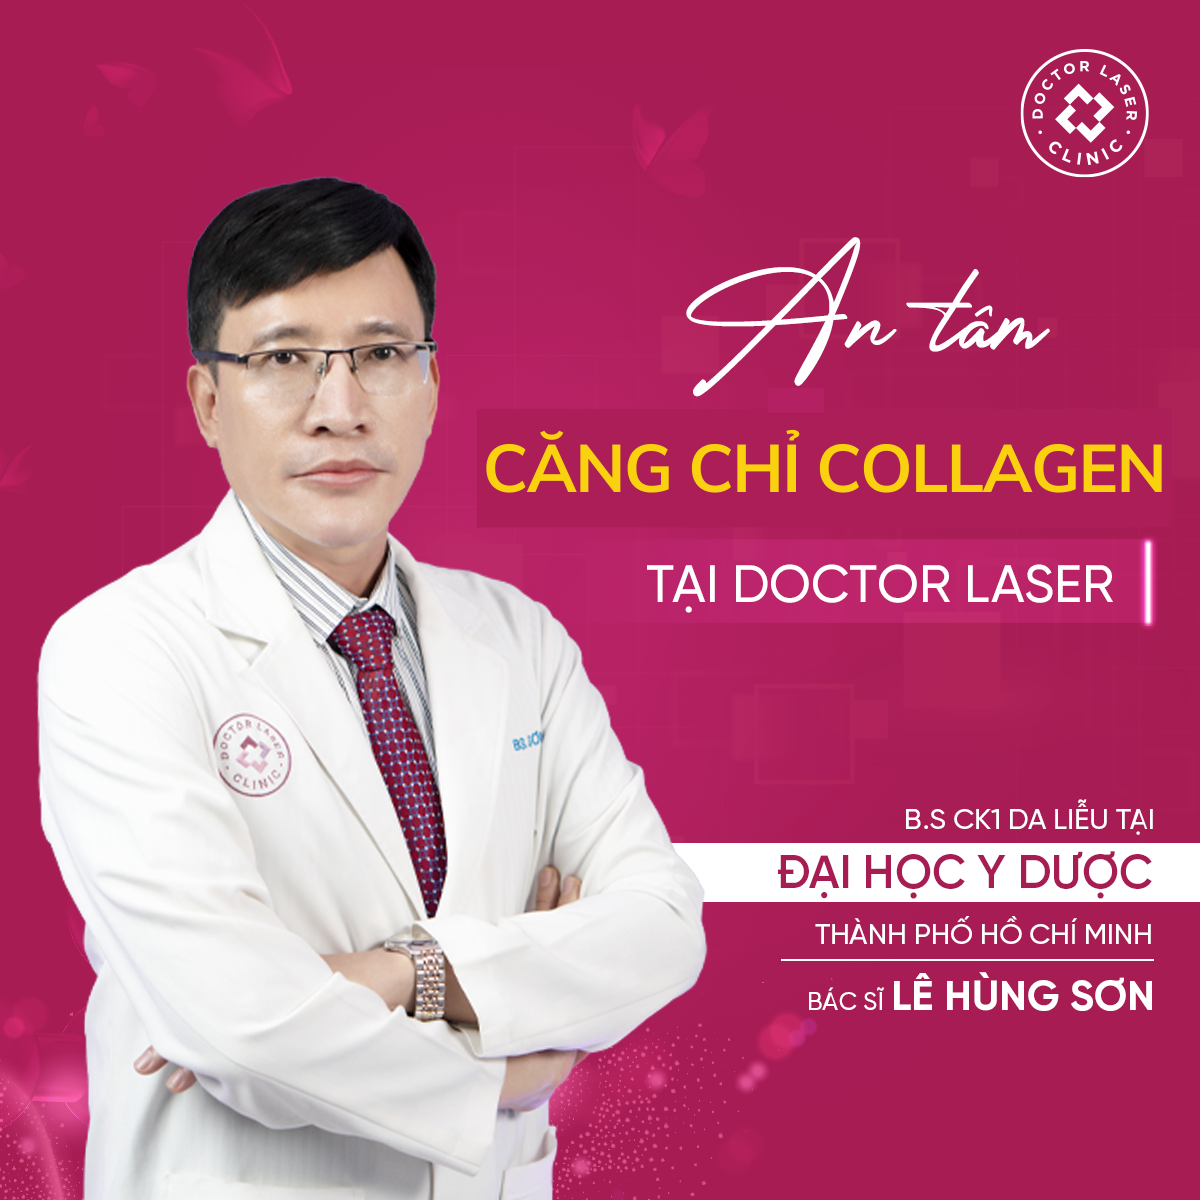 Bác sĩ tại Doctor Laser đều là người có kinh nghiệm và tay nghề cao